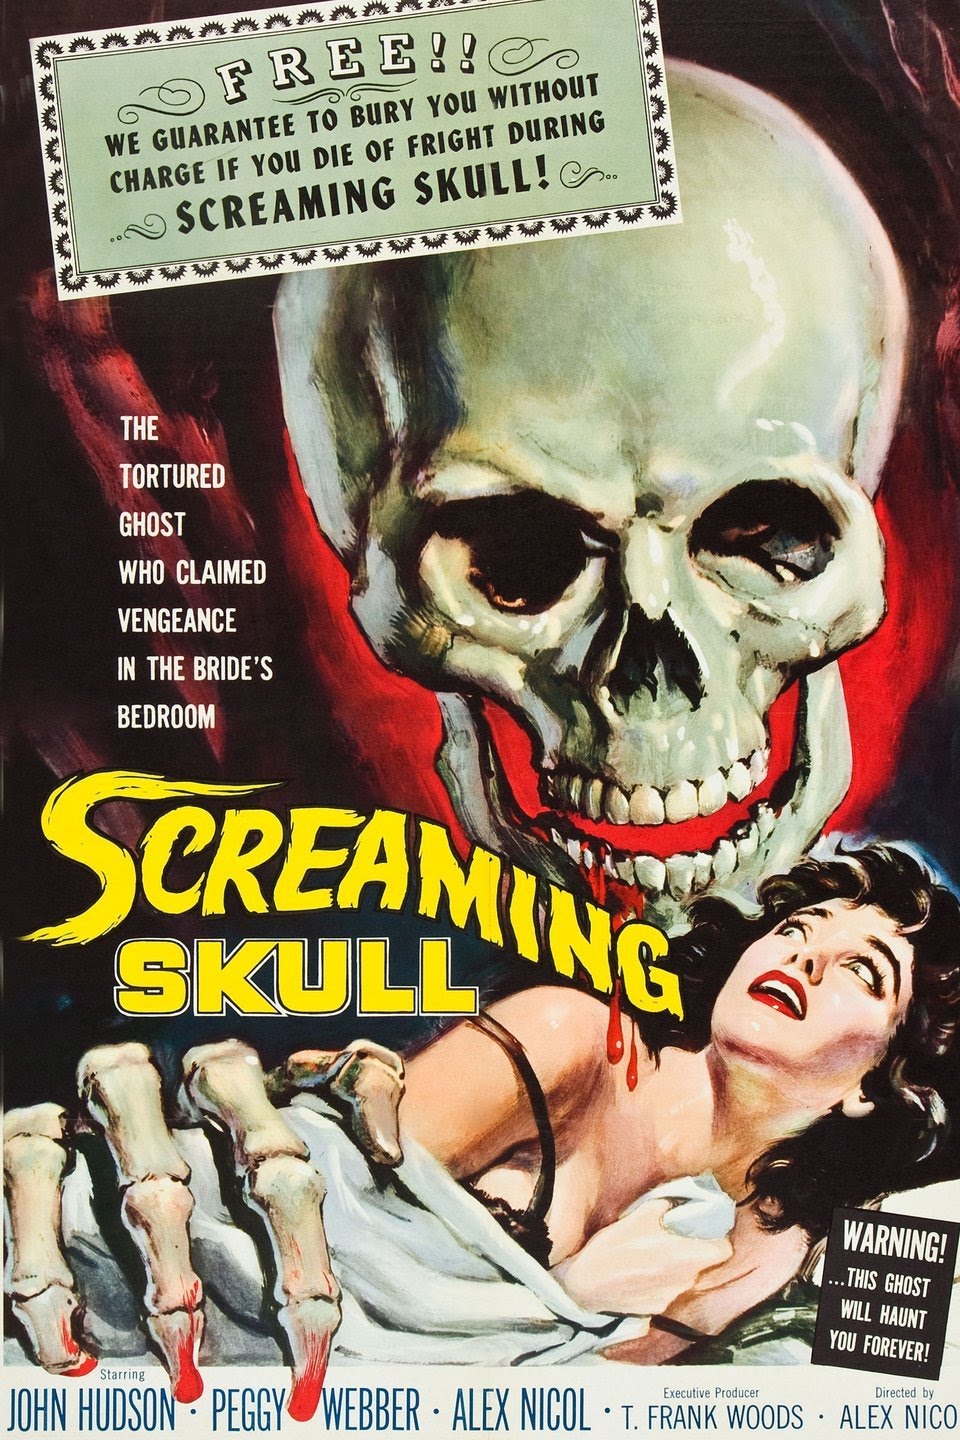 The Screaming Skull, 1958